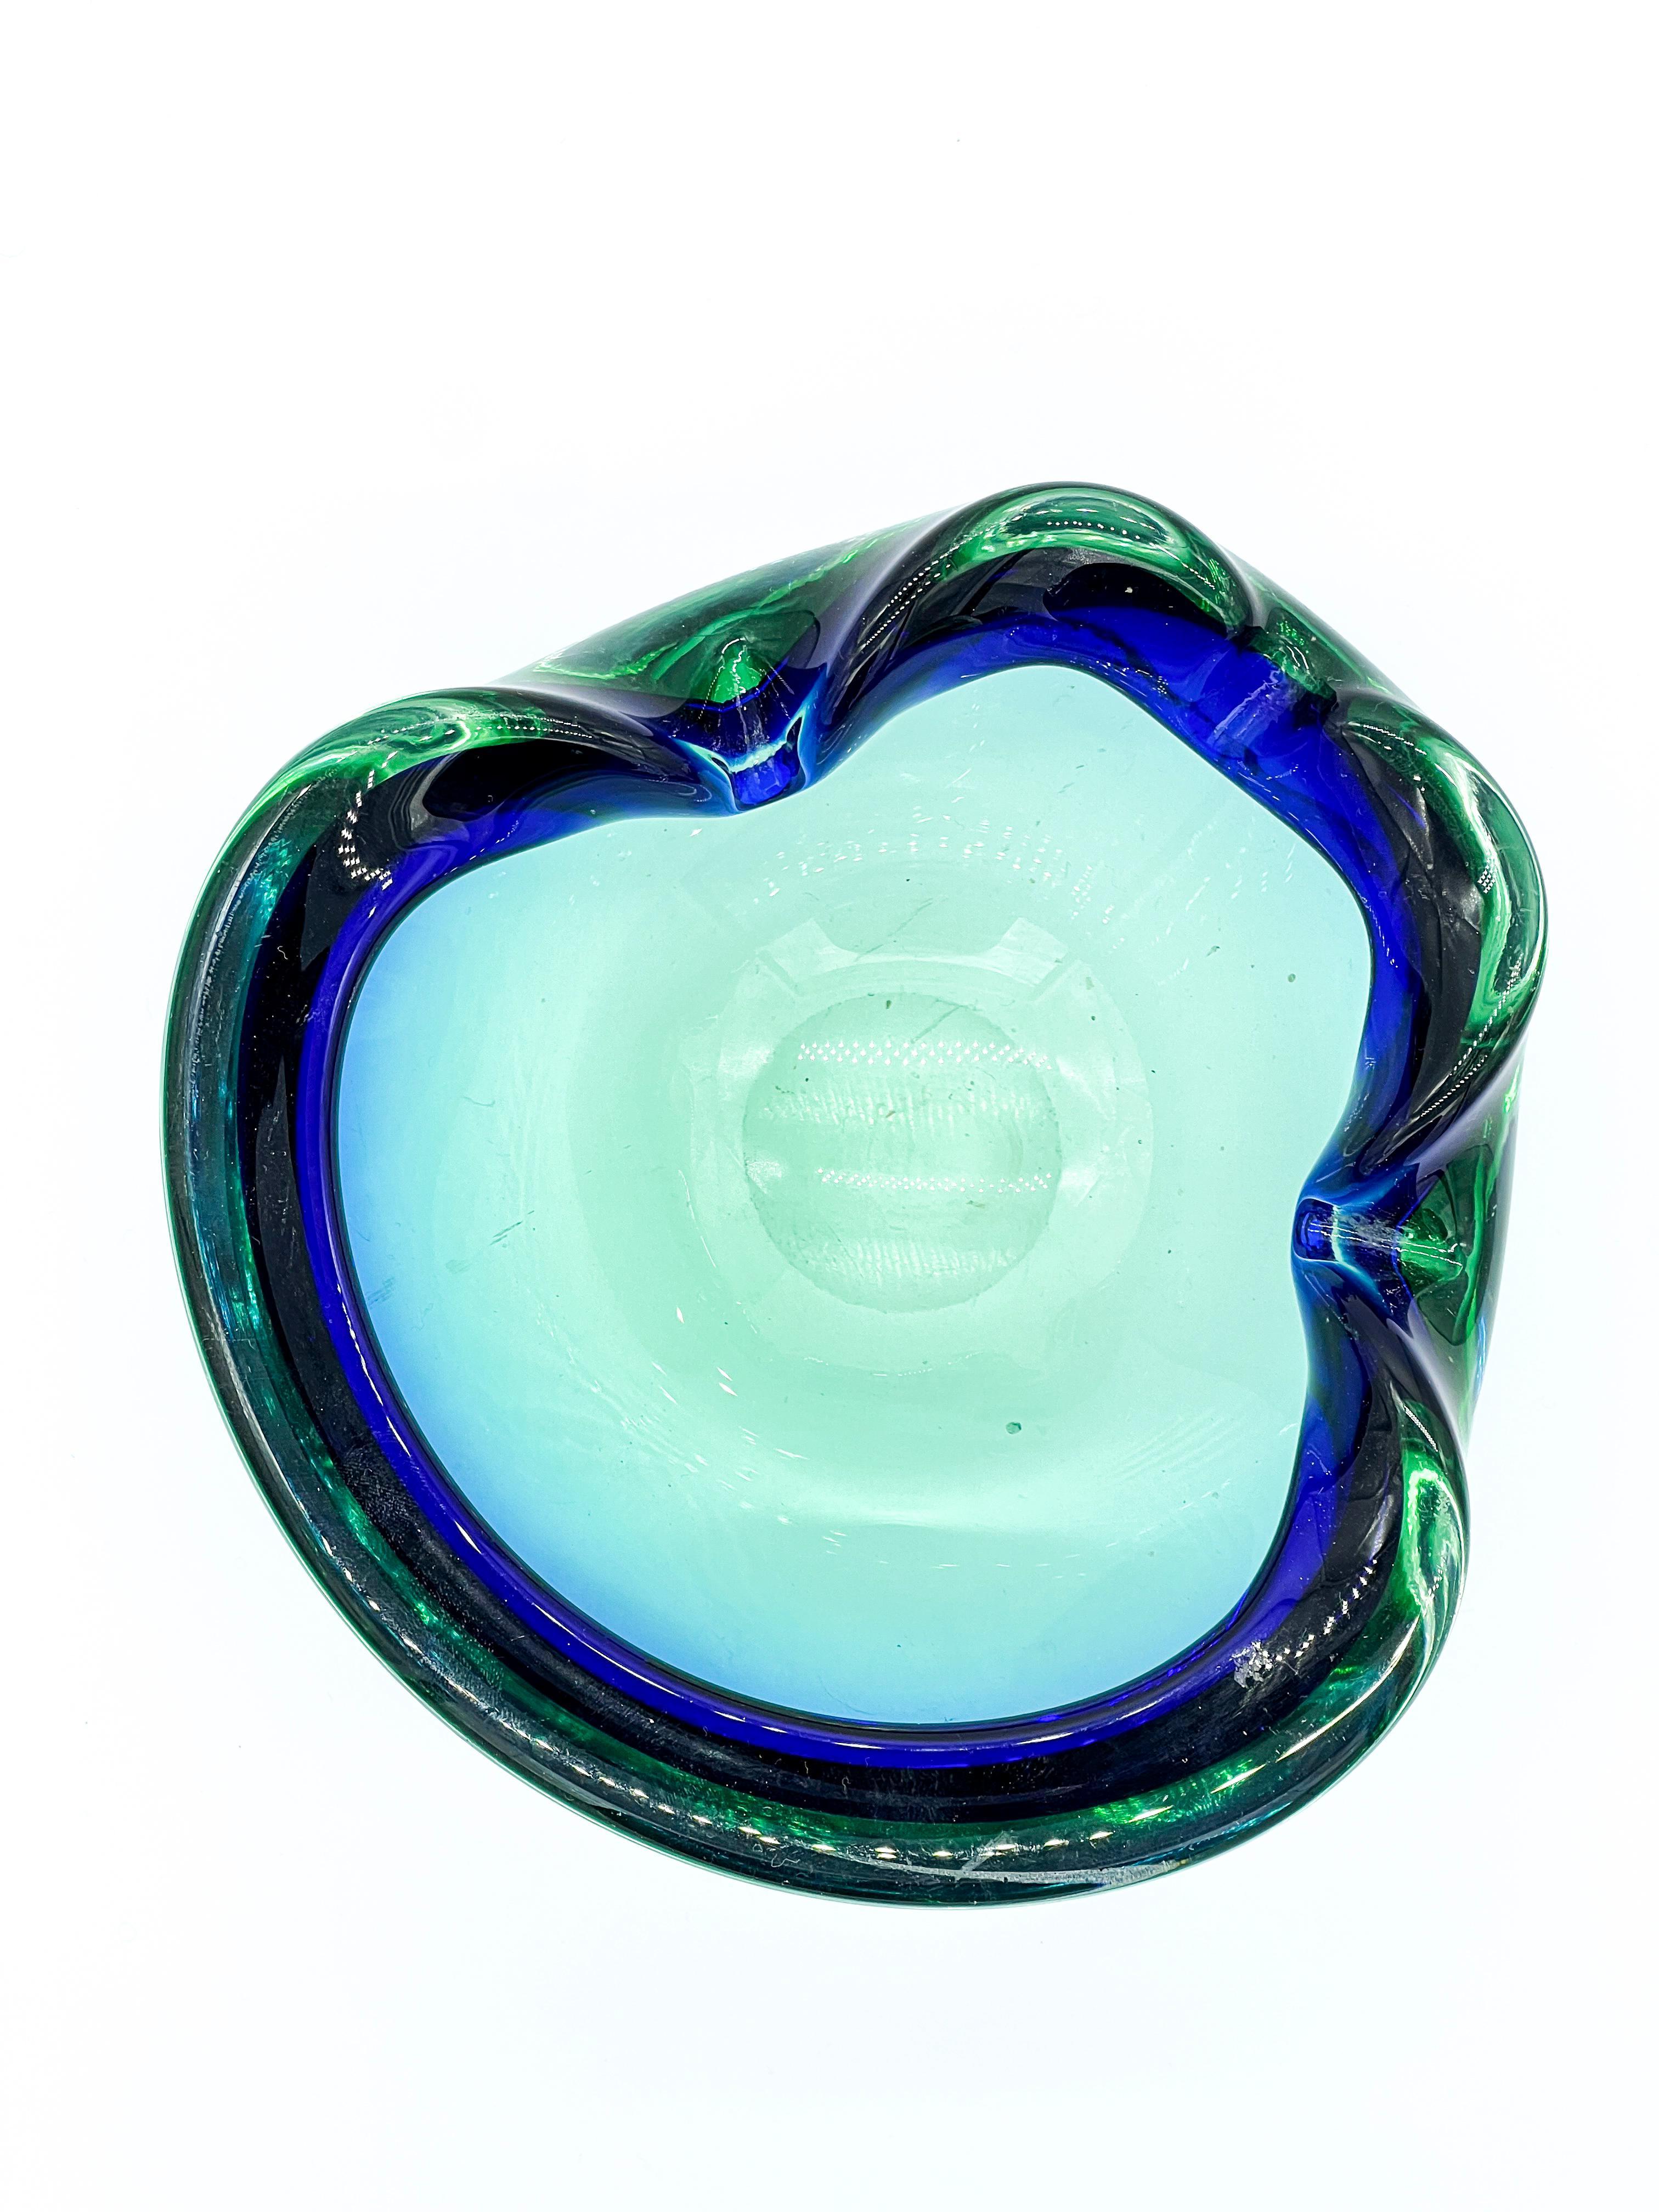 Nombreux sont les différents types de verre créés par les maîtres artisans sur l'île vénitienne de Murano. Des vases minces comme l'air aux sculptures expressives, en passant par les objets massifs aux couleurs profondes et vives, les verriers font